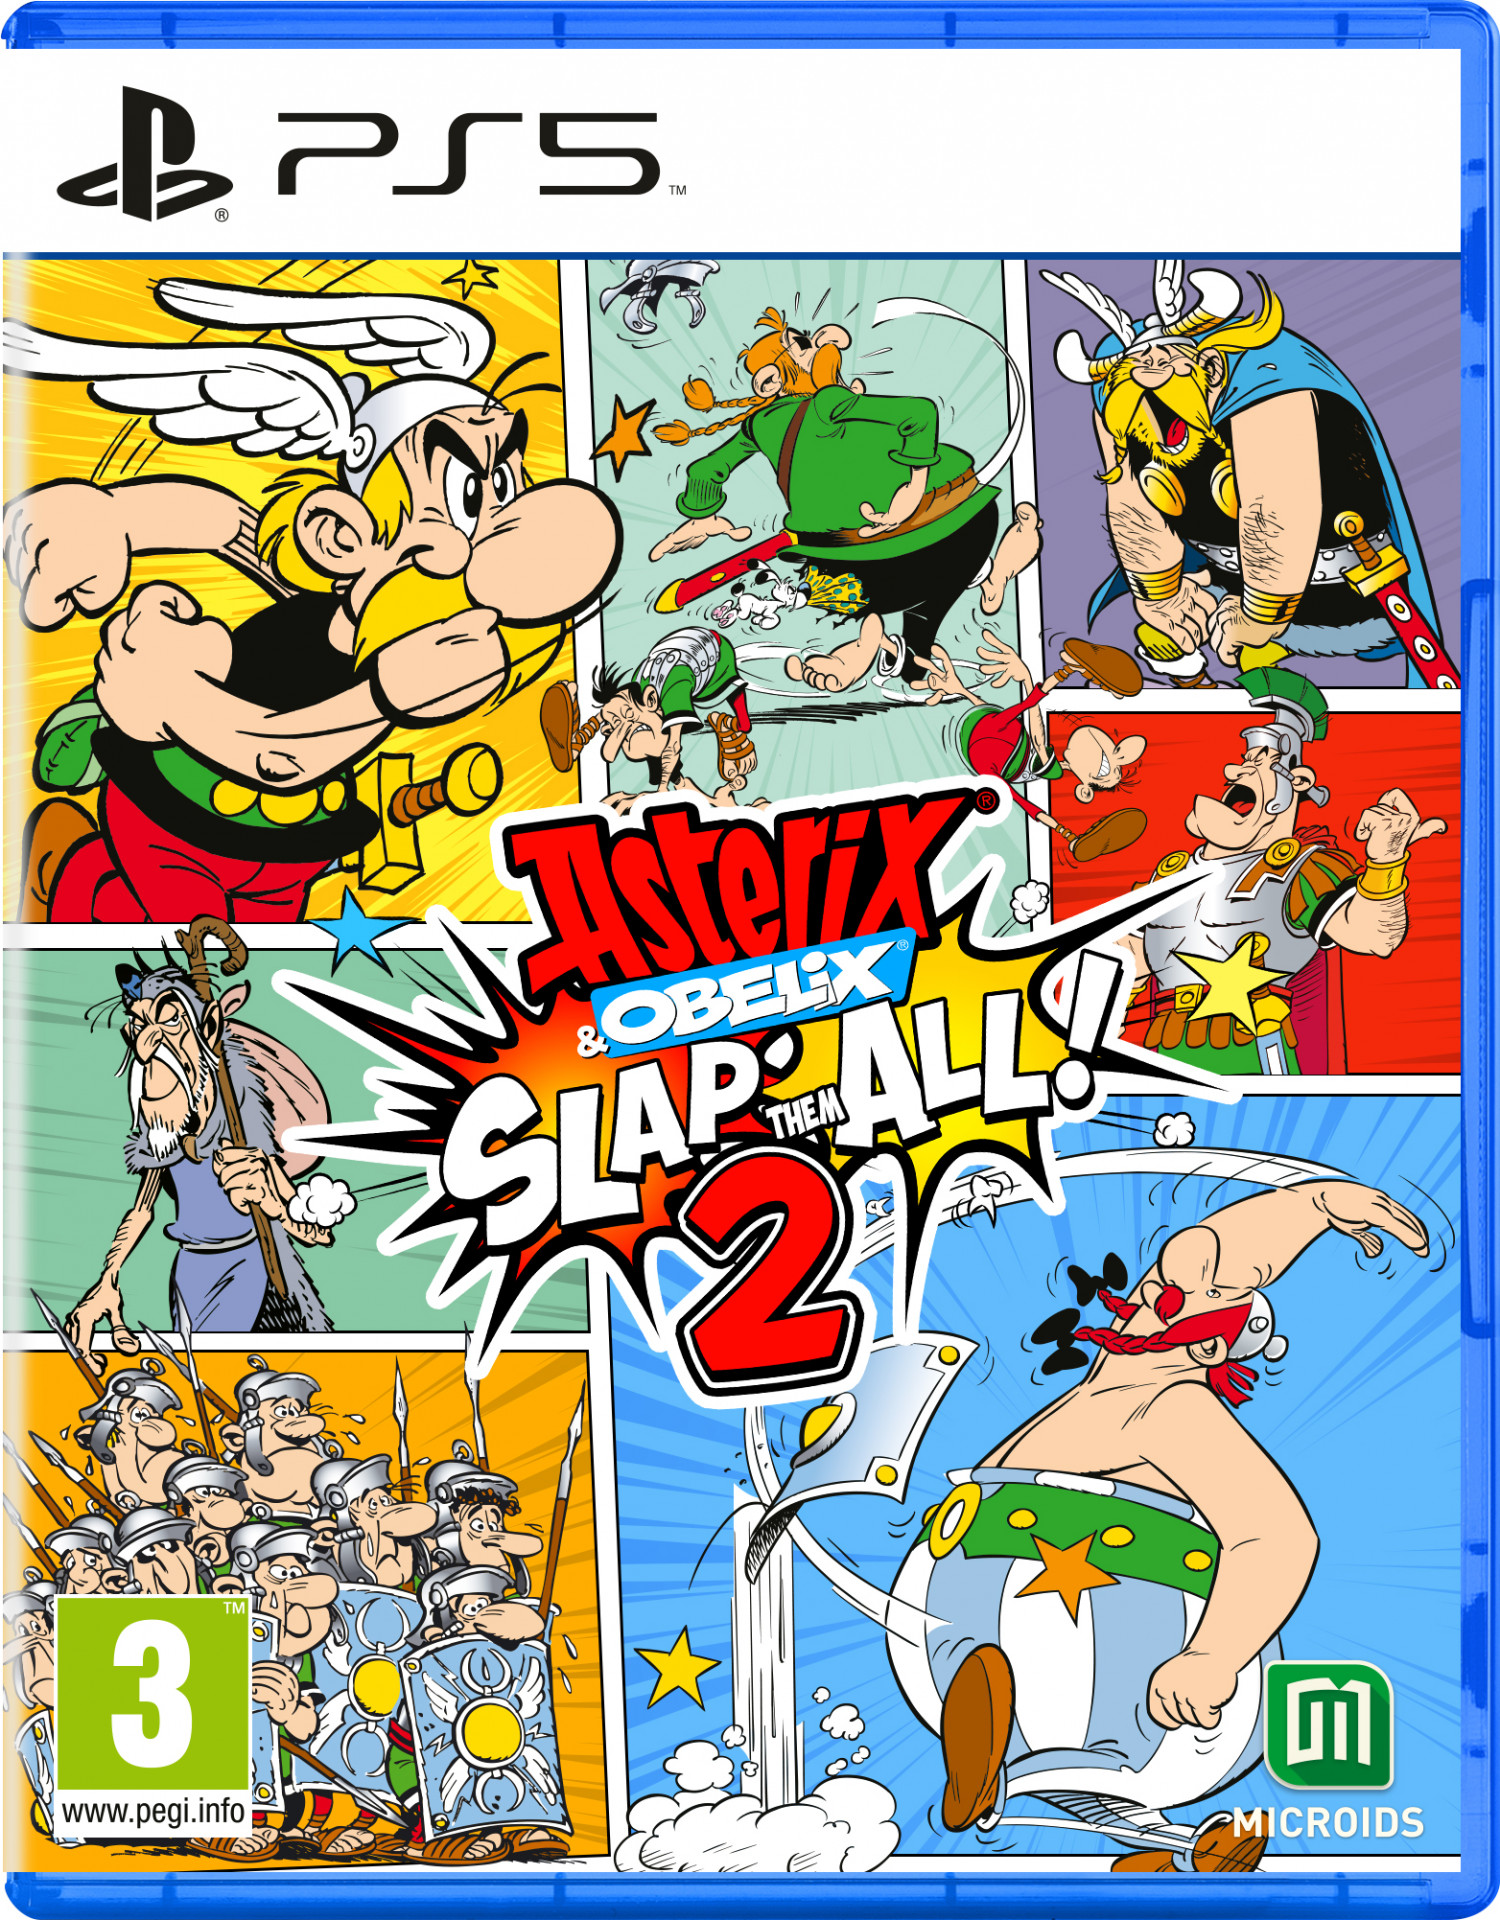 Asterix & Obelix: Slap Them All! 2 (PS5), Microids